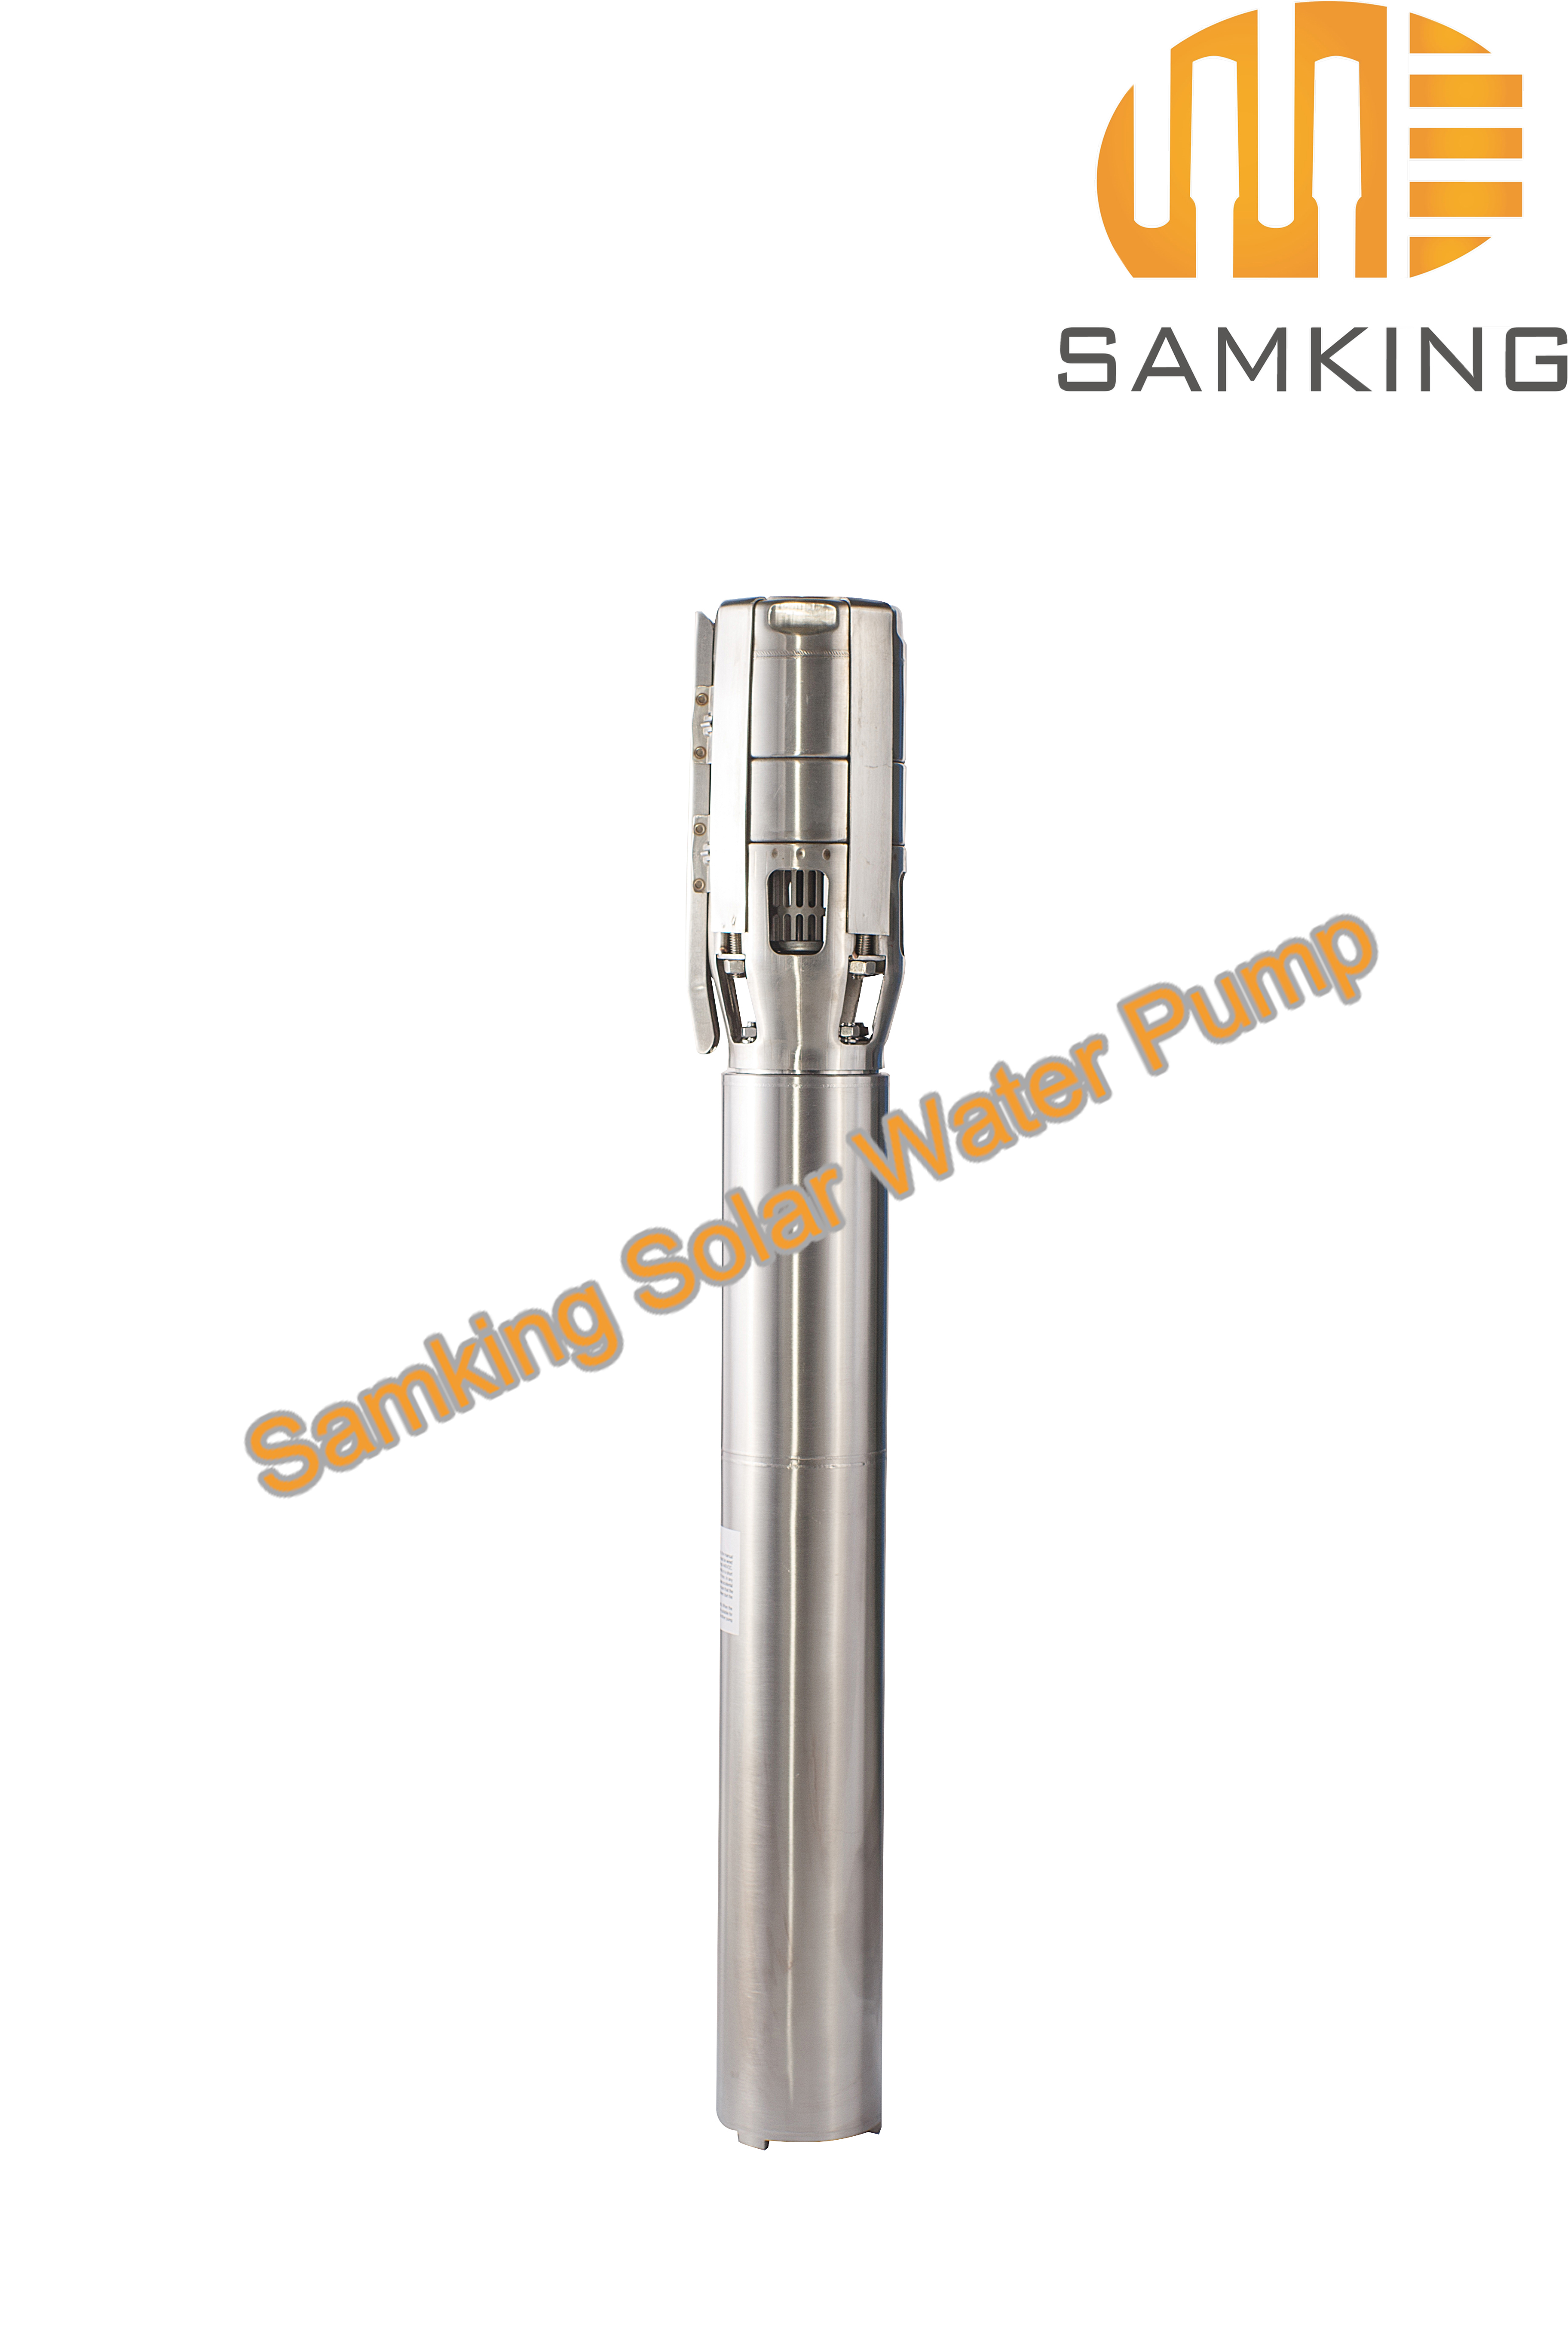 5SP25-1 Samking Solar Water Pump